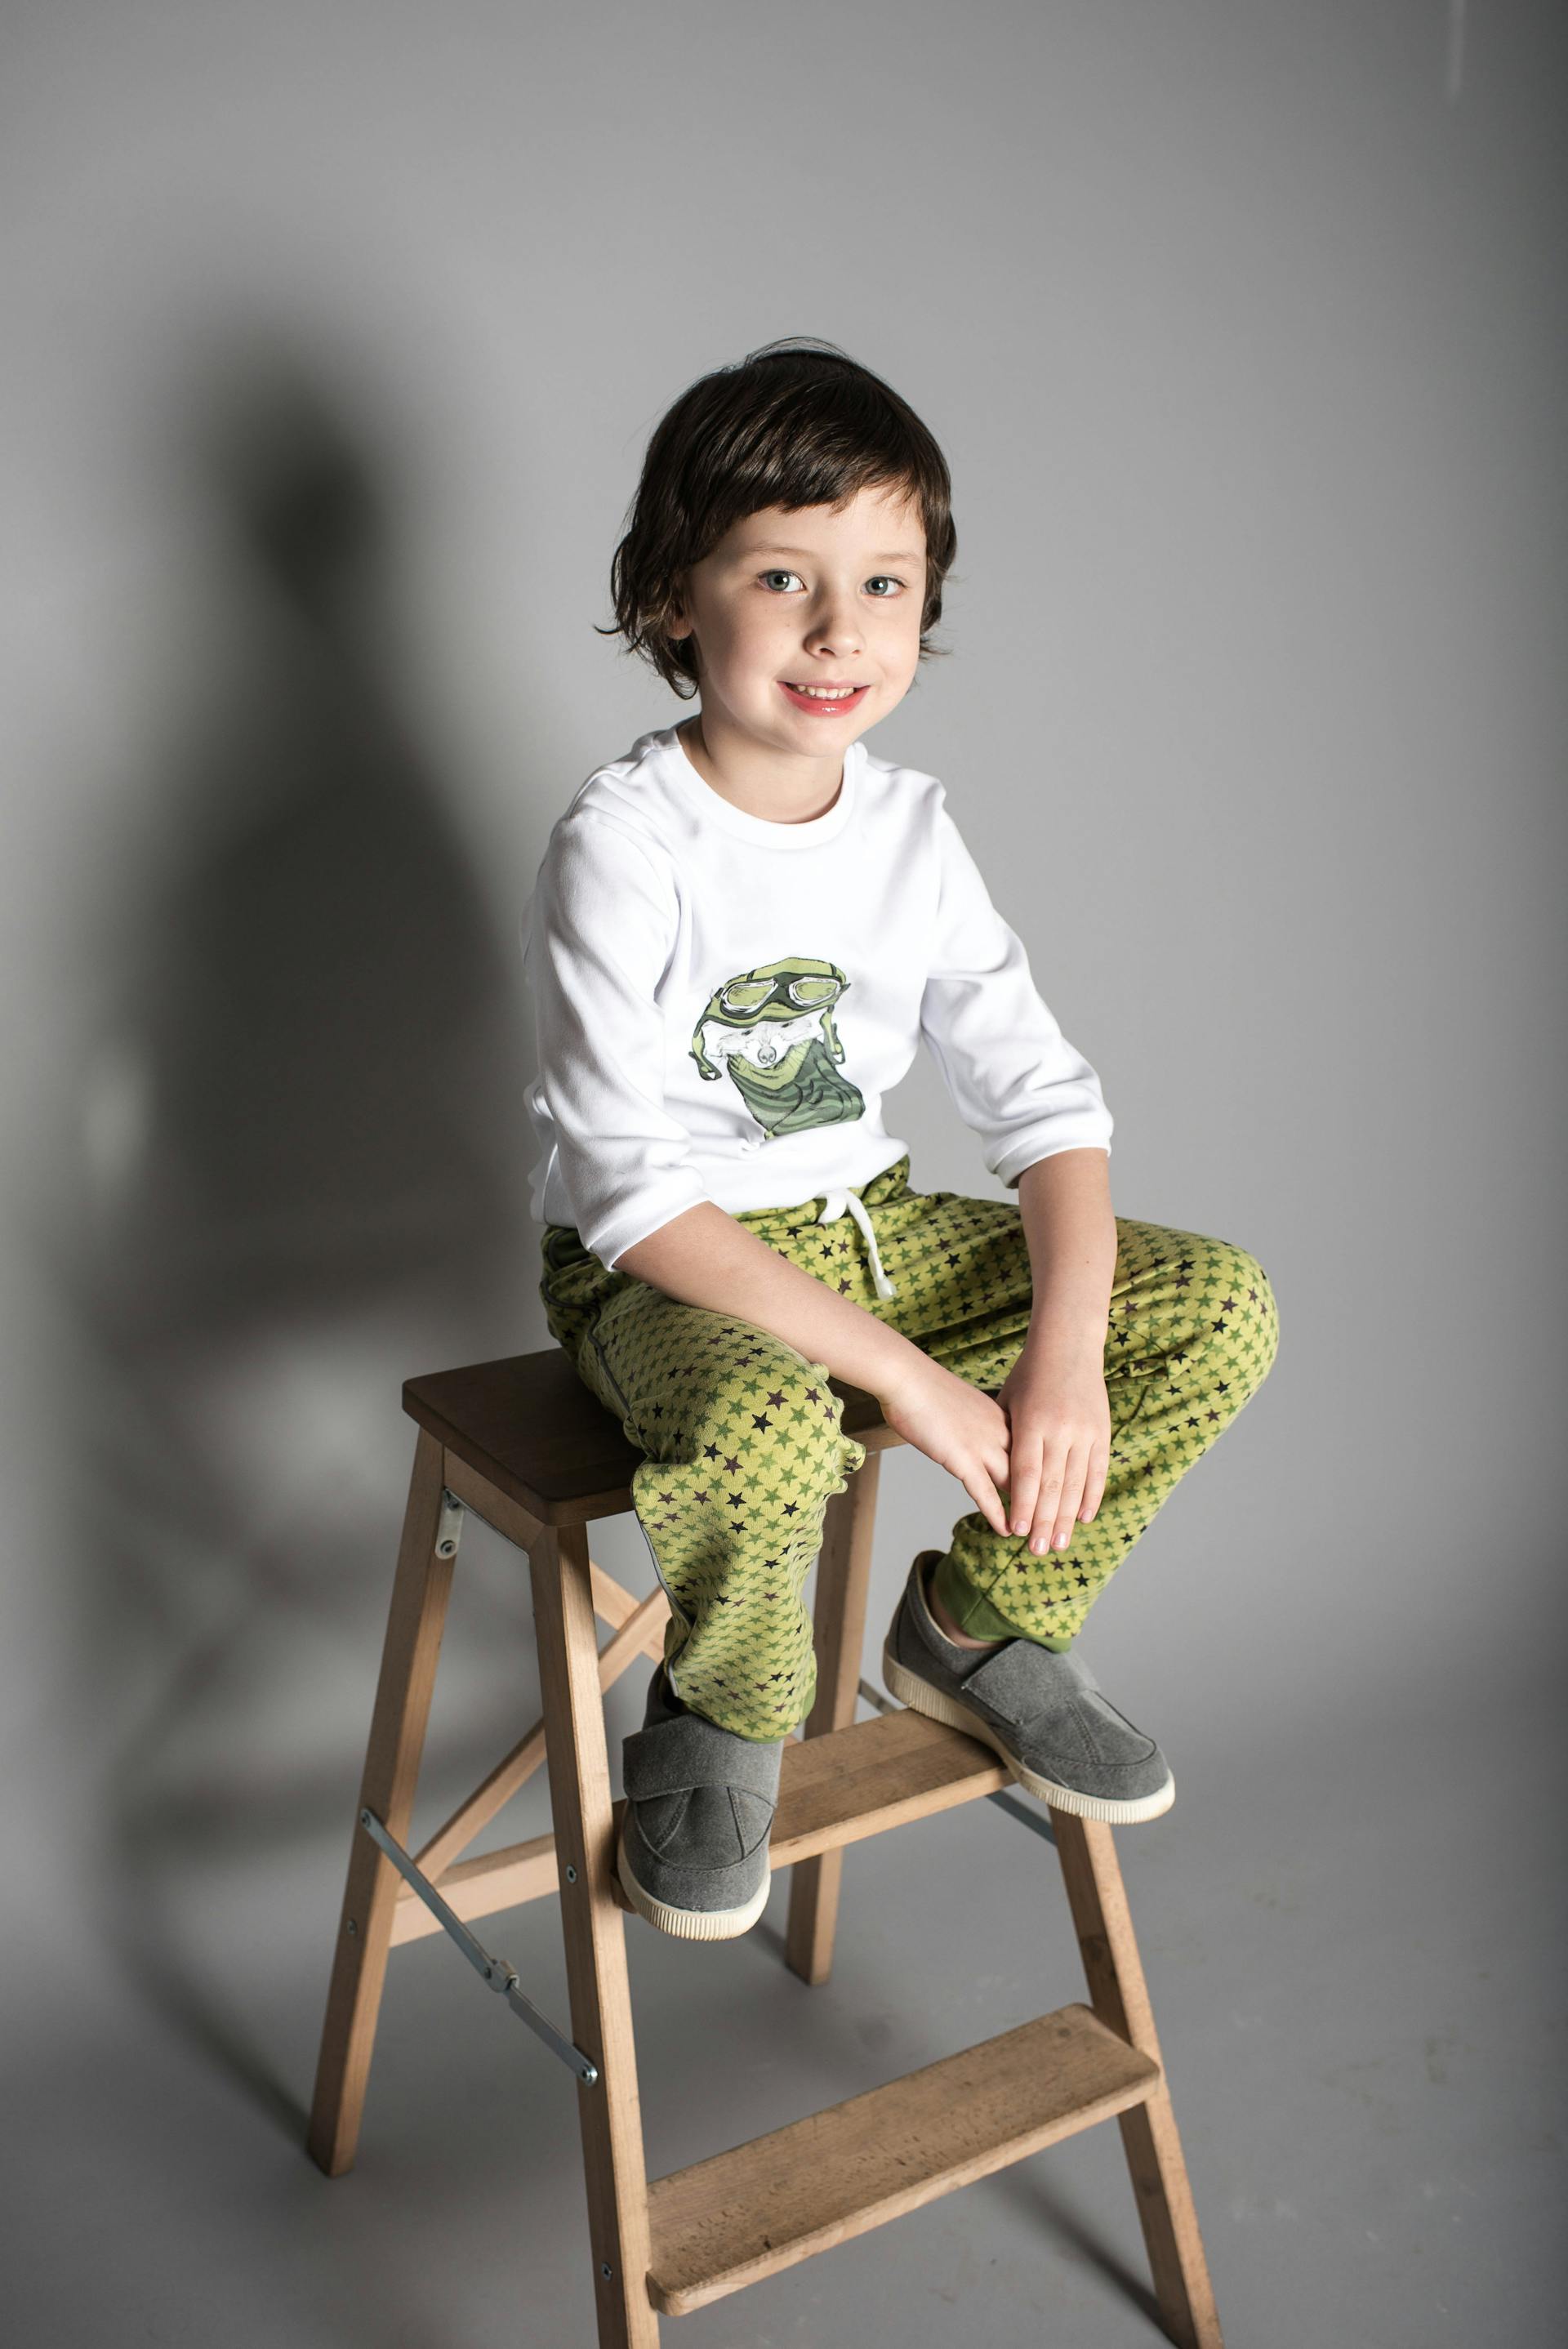 Un niño sentado en unos escalones de madera en forma de A | Fuente: Pexels